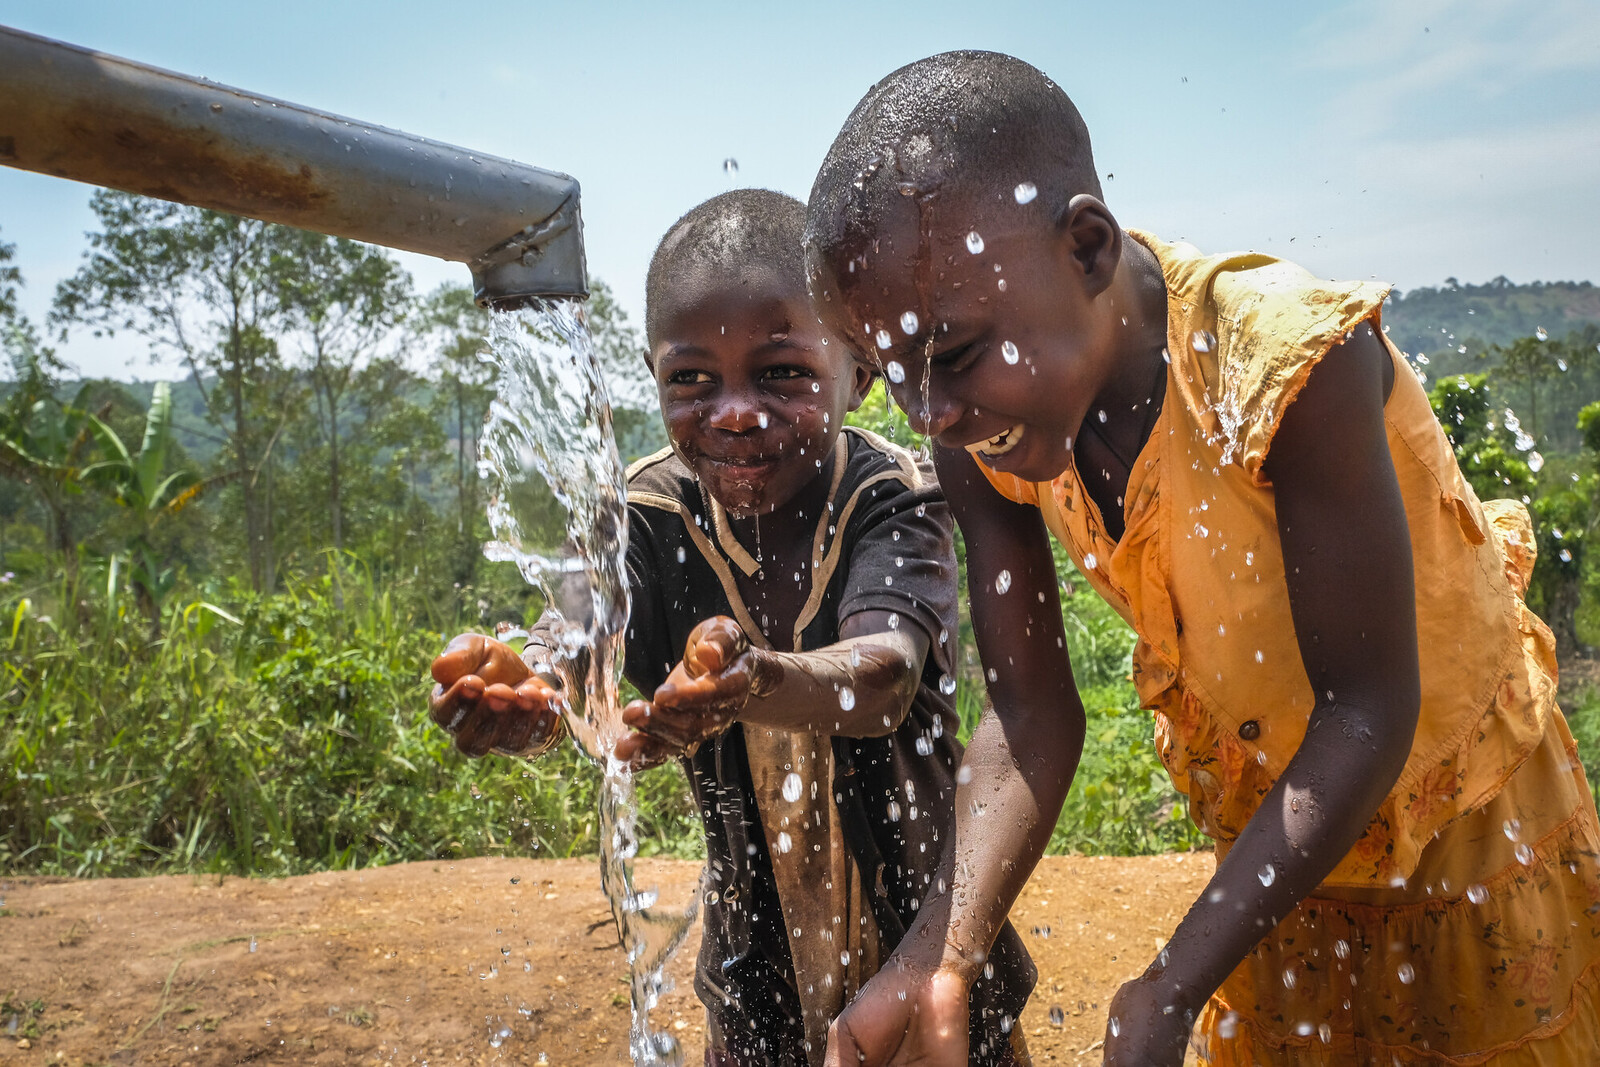 Wasser für Kinder in Afrika: Die Unternehmensspenden der Telekom kommen an